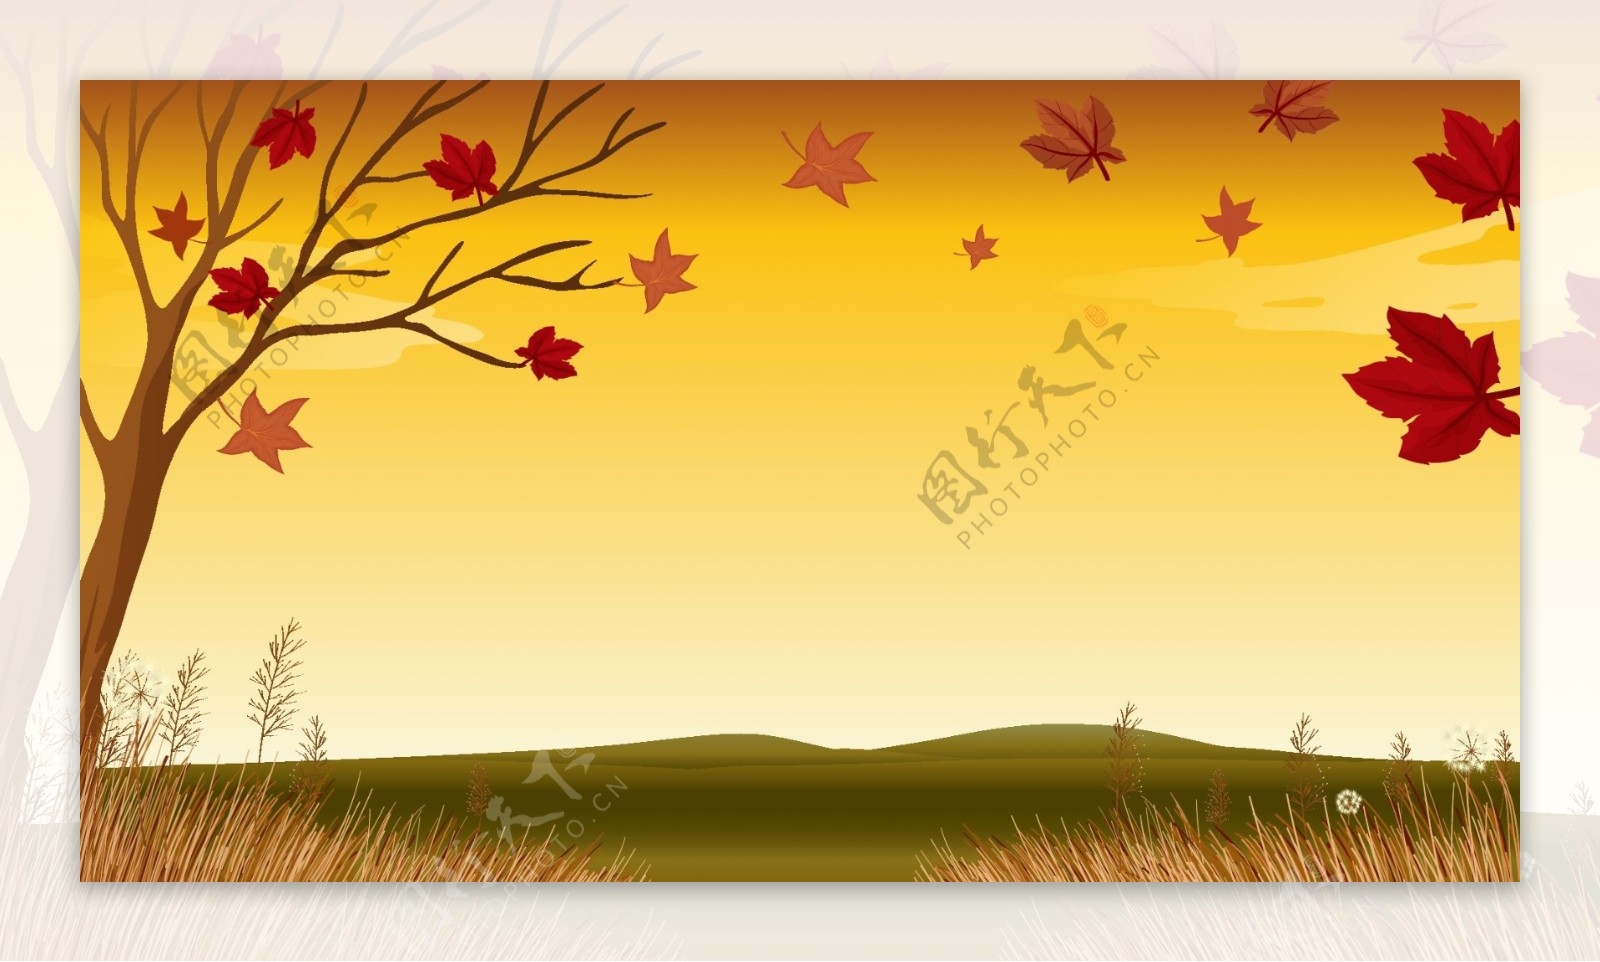 秋天里的风景插画